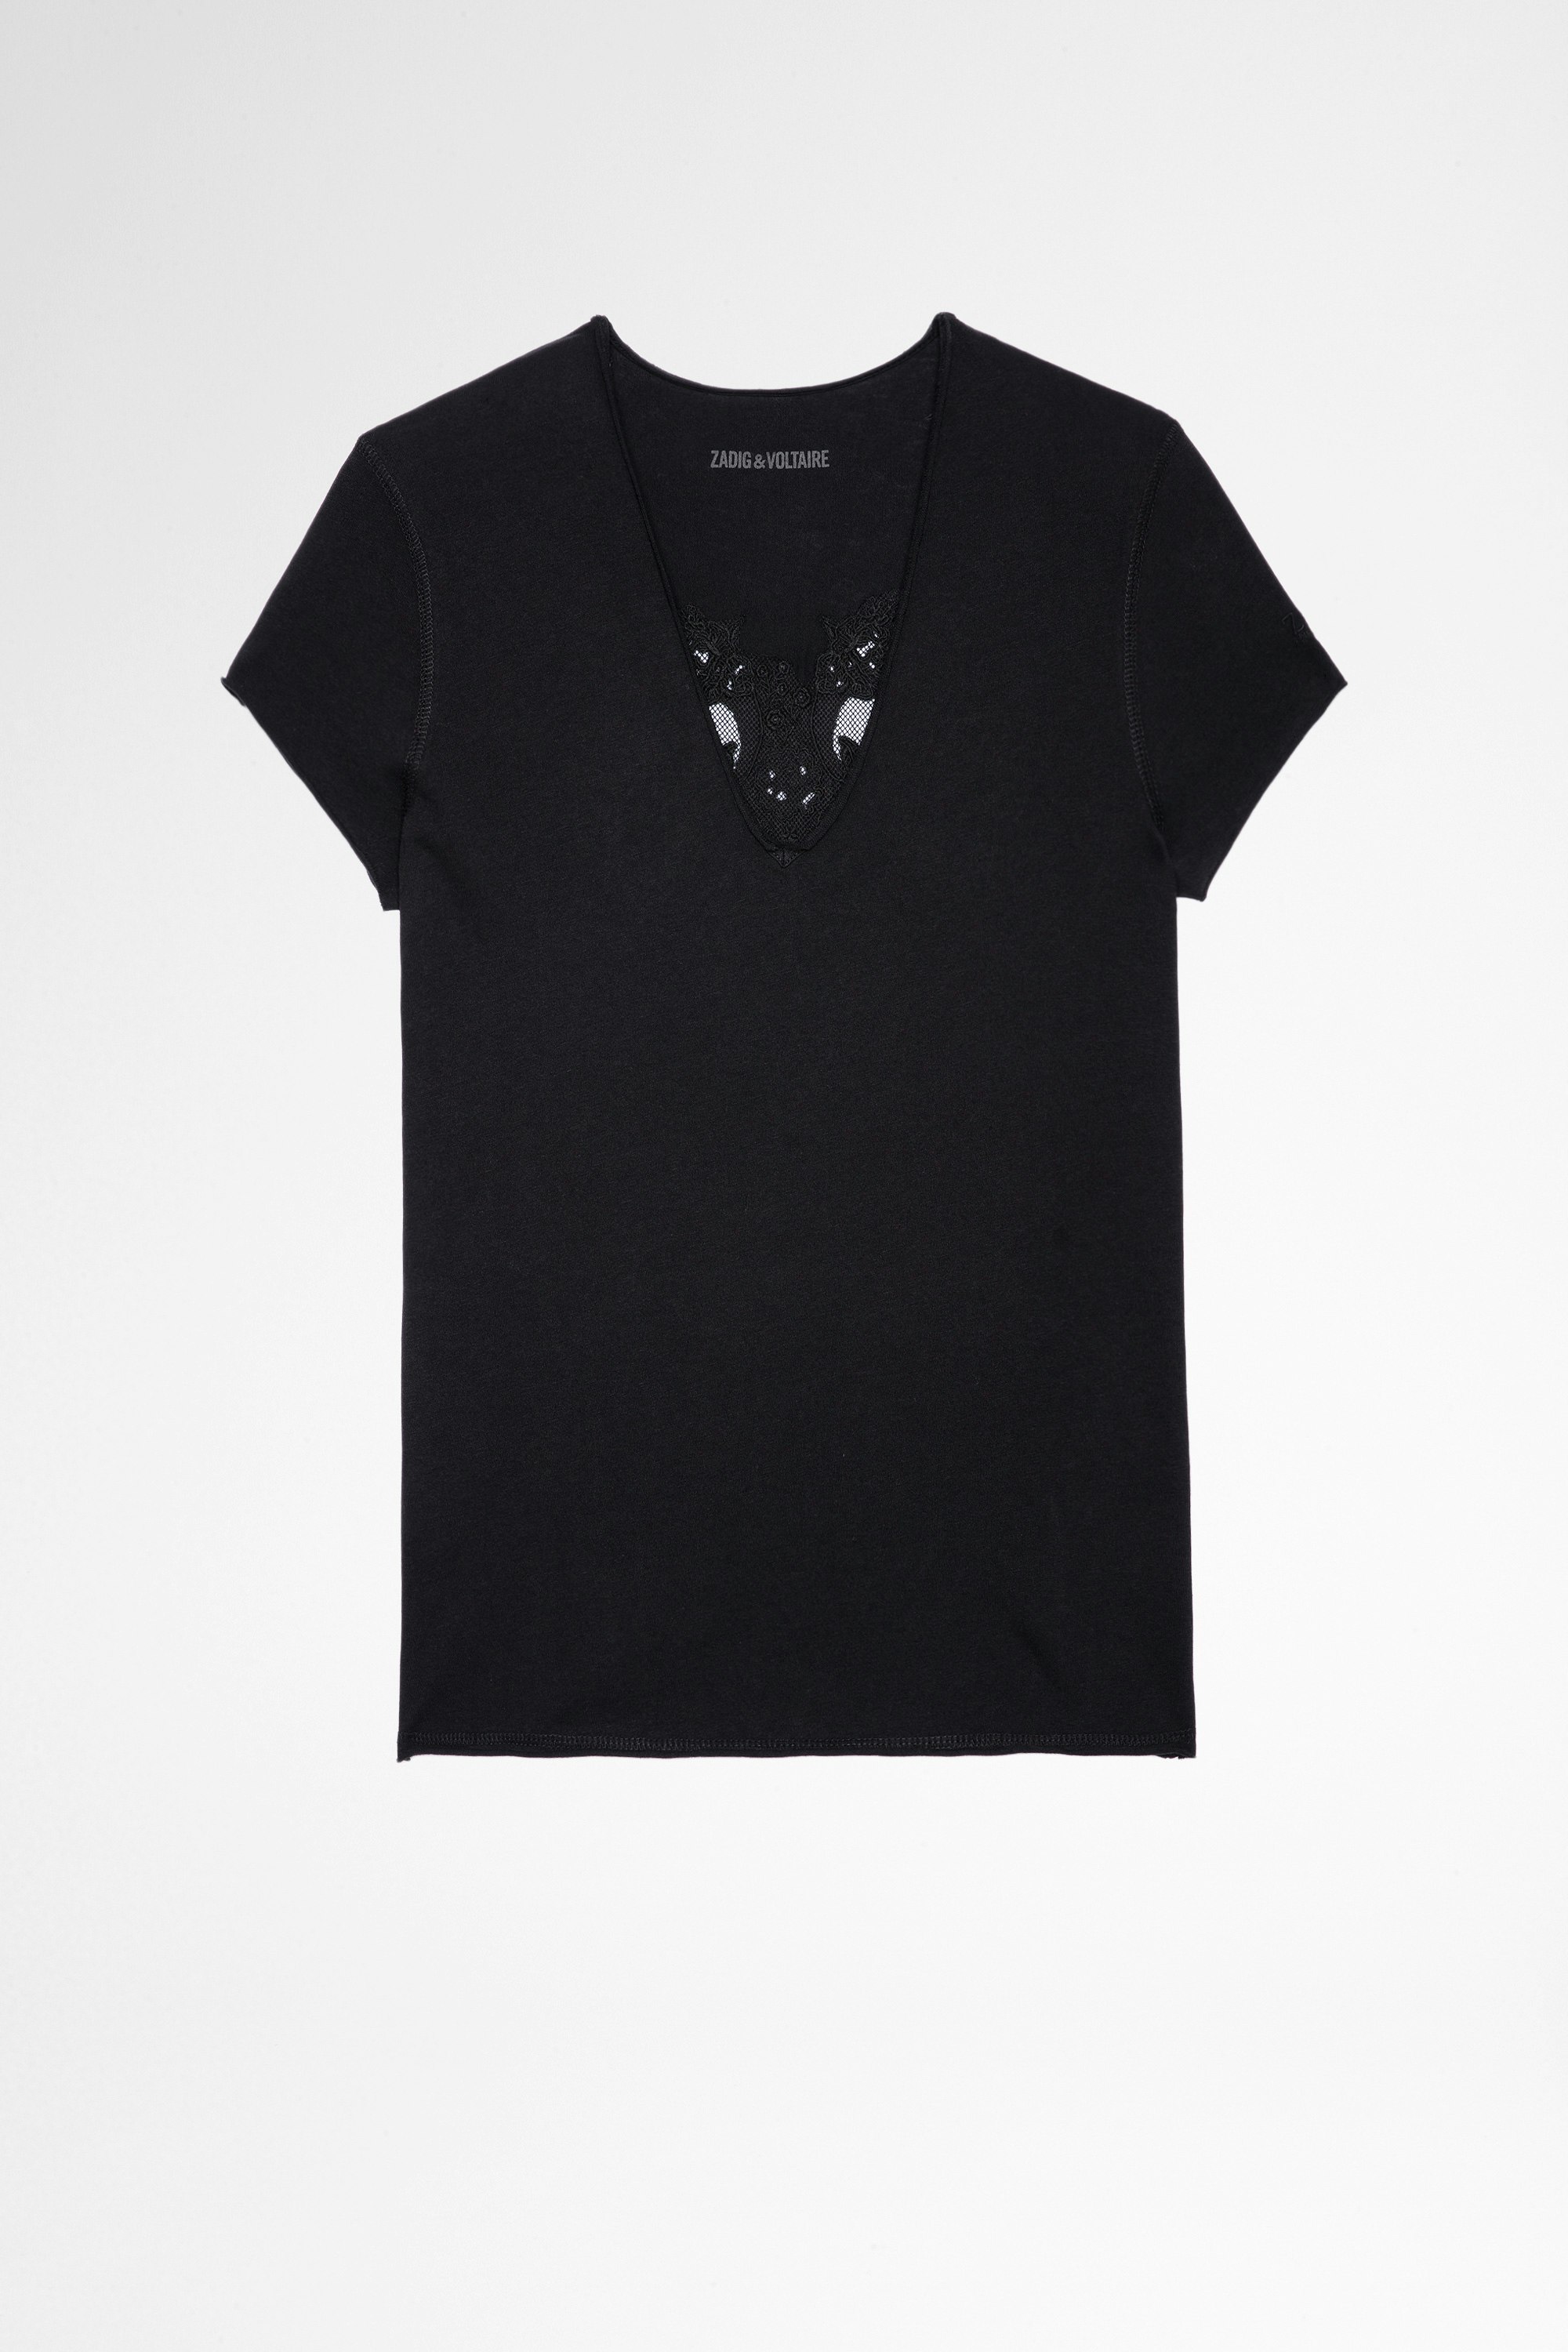 T-Shirt Story Fishnet Double Heart T-shirt en coton noir à empiècement skulls transparents au dos